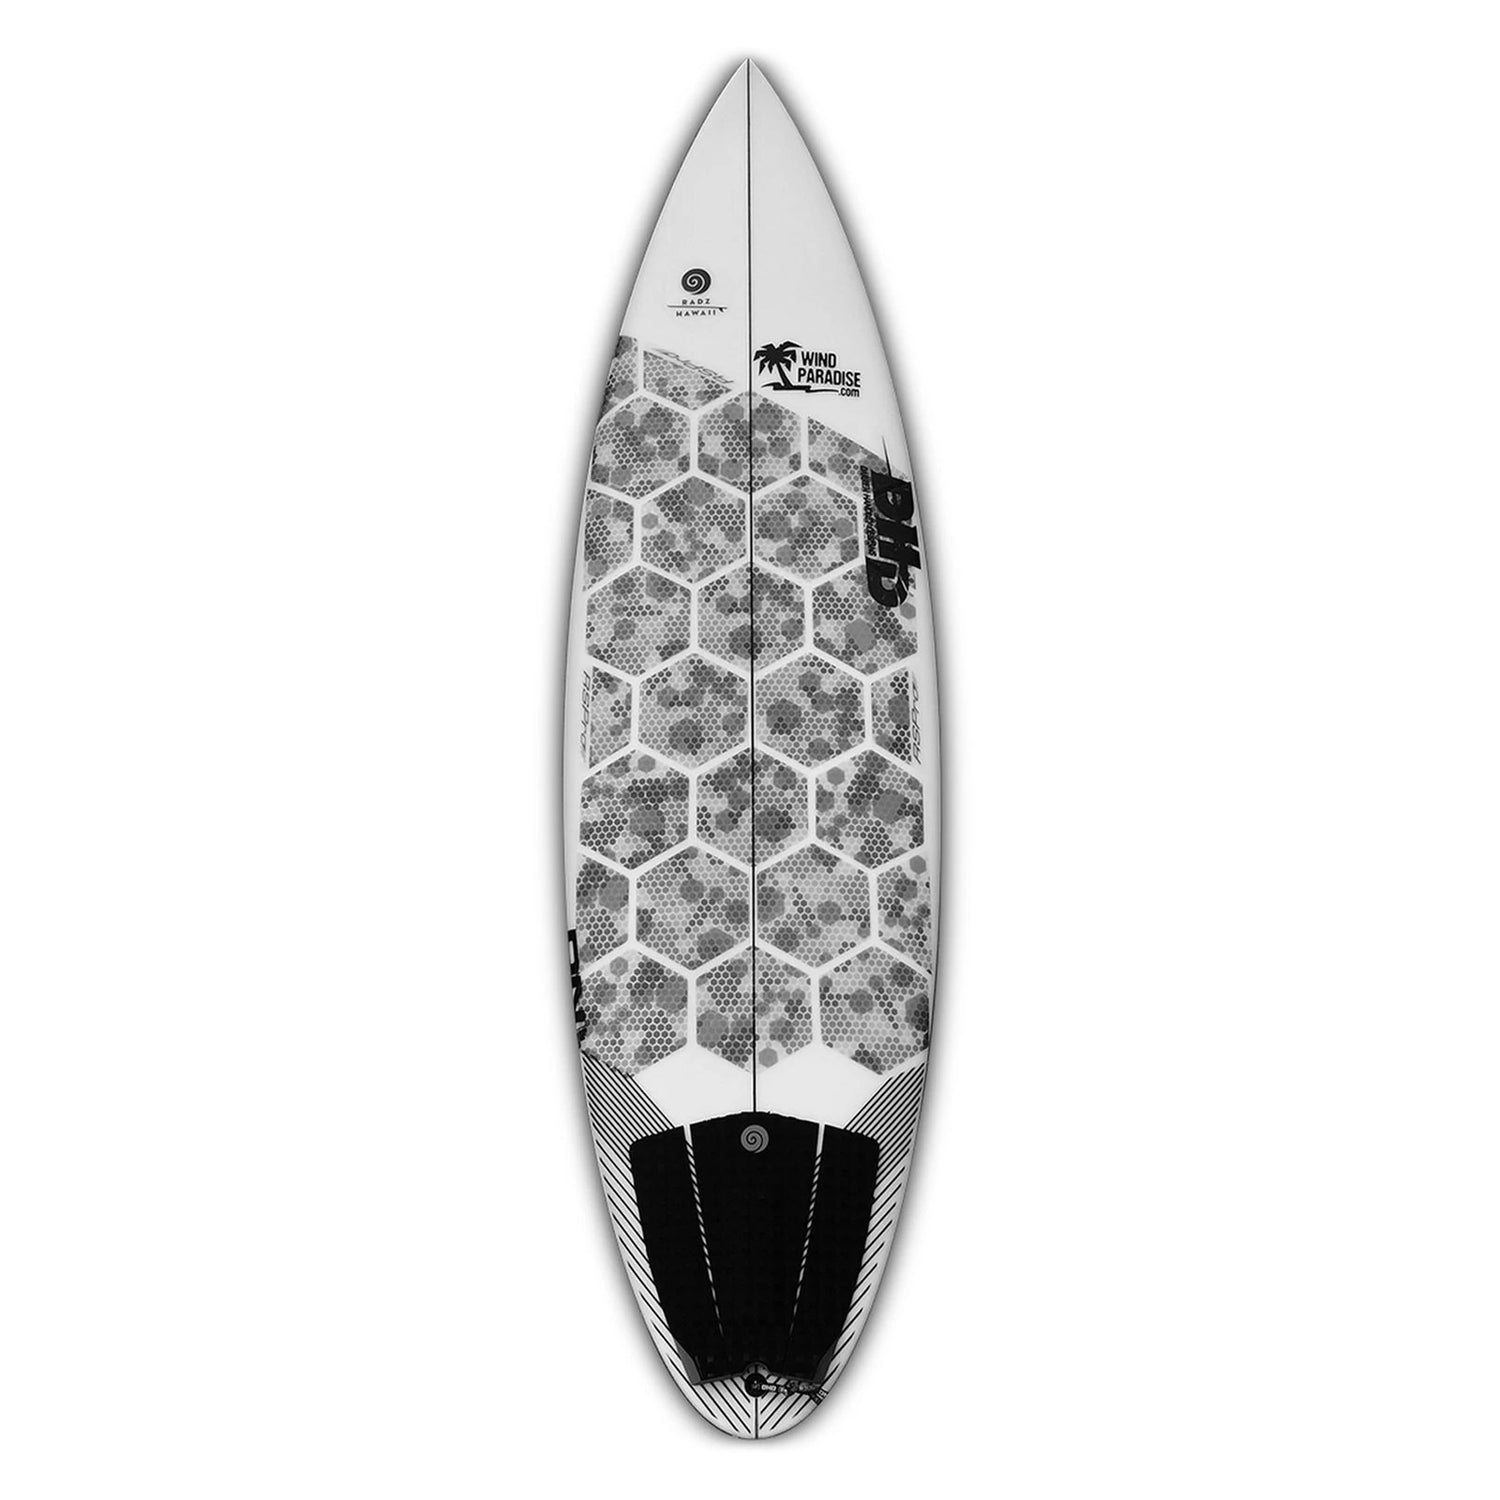 Installierte RSPro Hexa Traction Camo Edition auf einen Surfboard vor weißem Hintergrund.